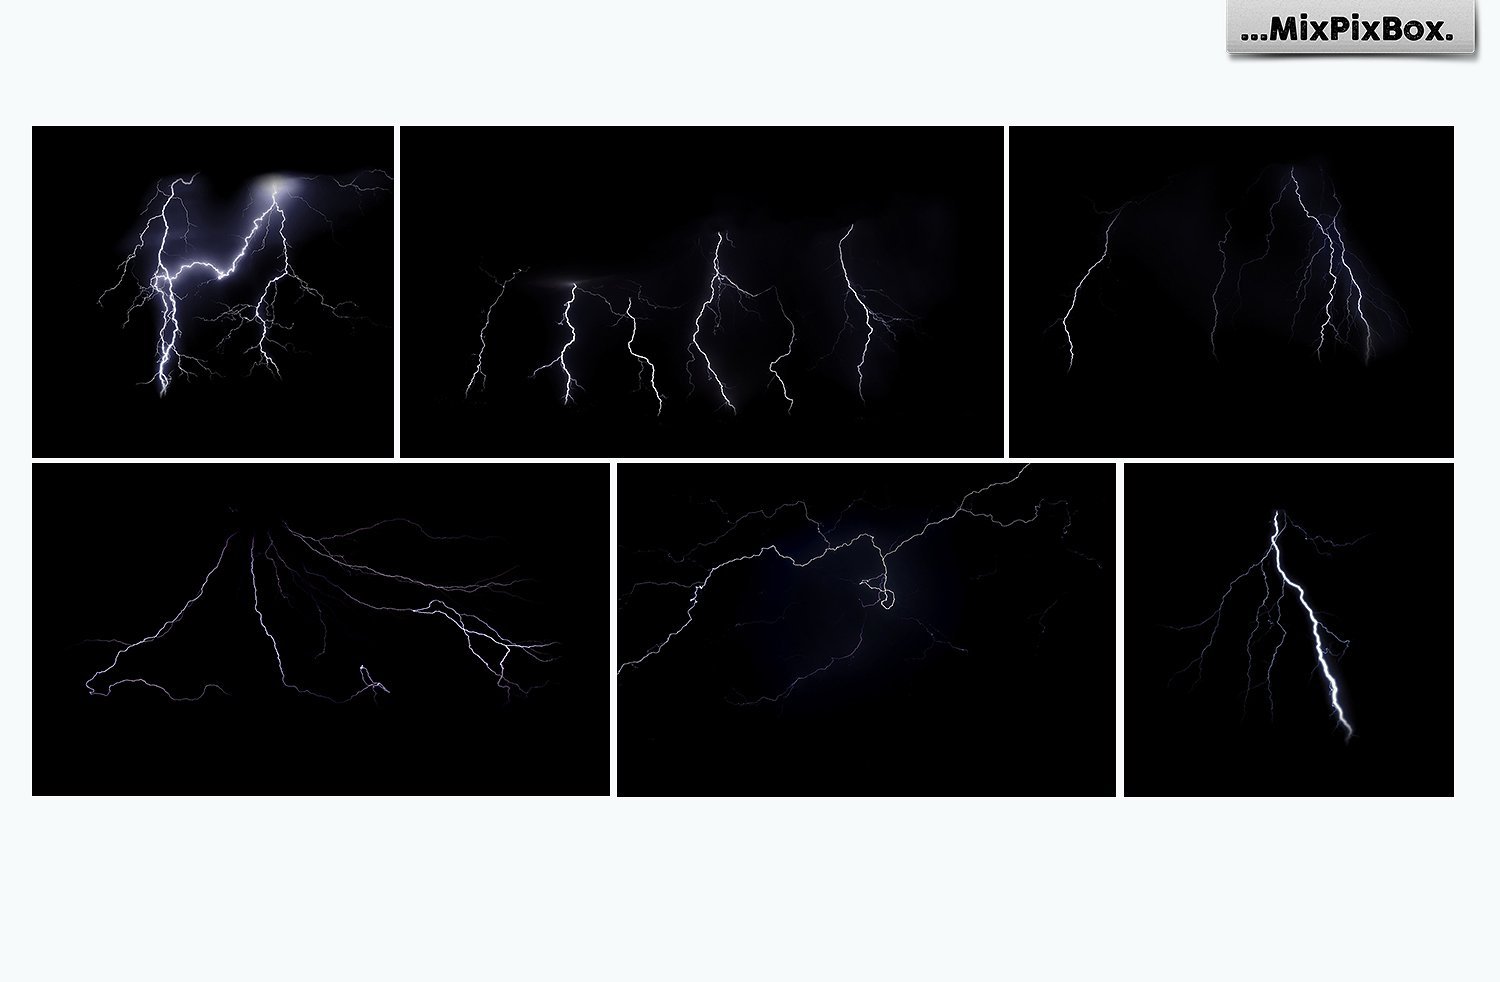 Lightning Photo Overlays